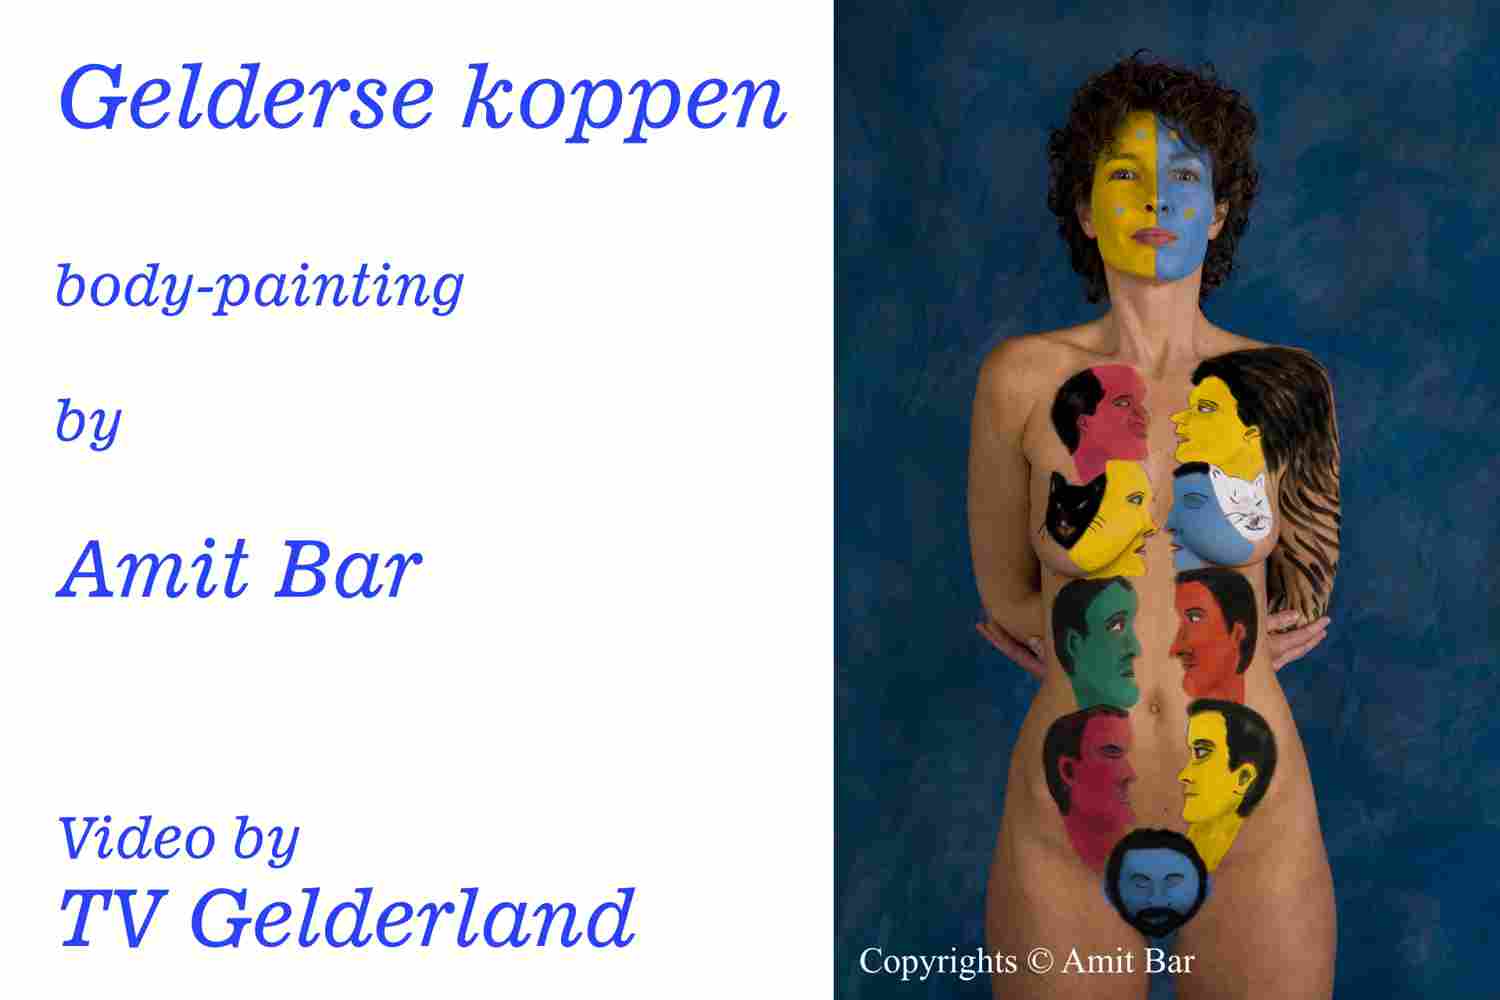 Gelderse koppen video: Film of TV Gelderland (in Dutch) for their program Gelderse Koppen (Heads of Gelderland).